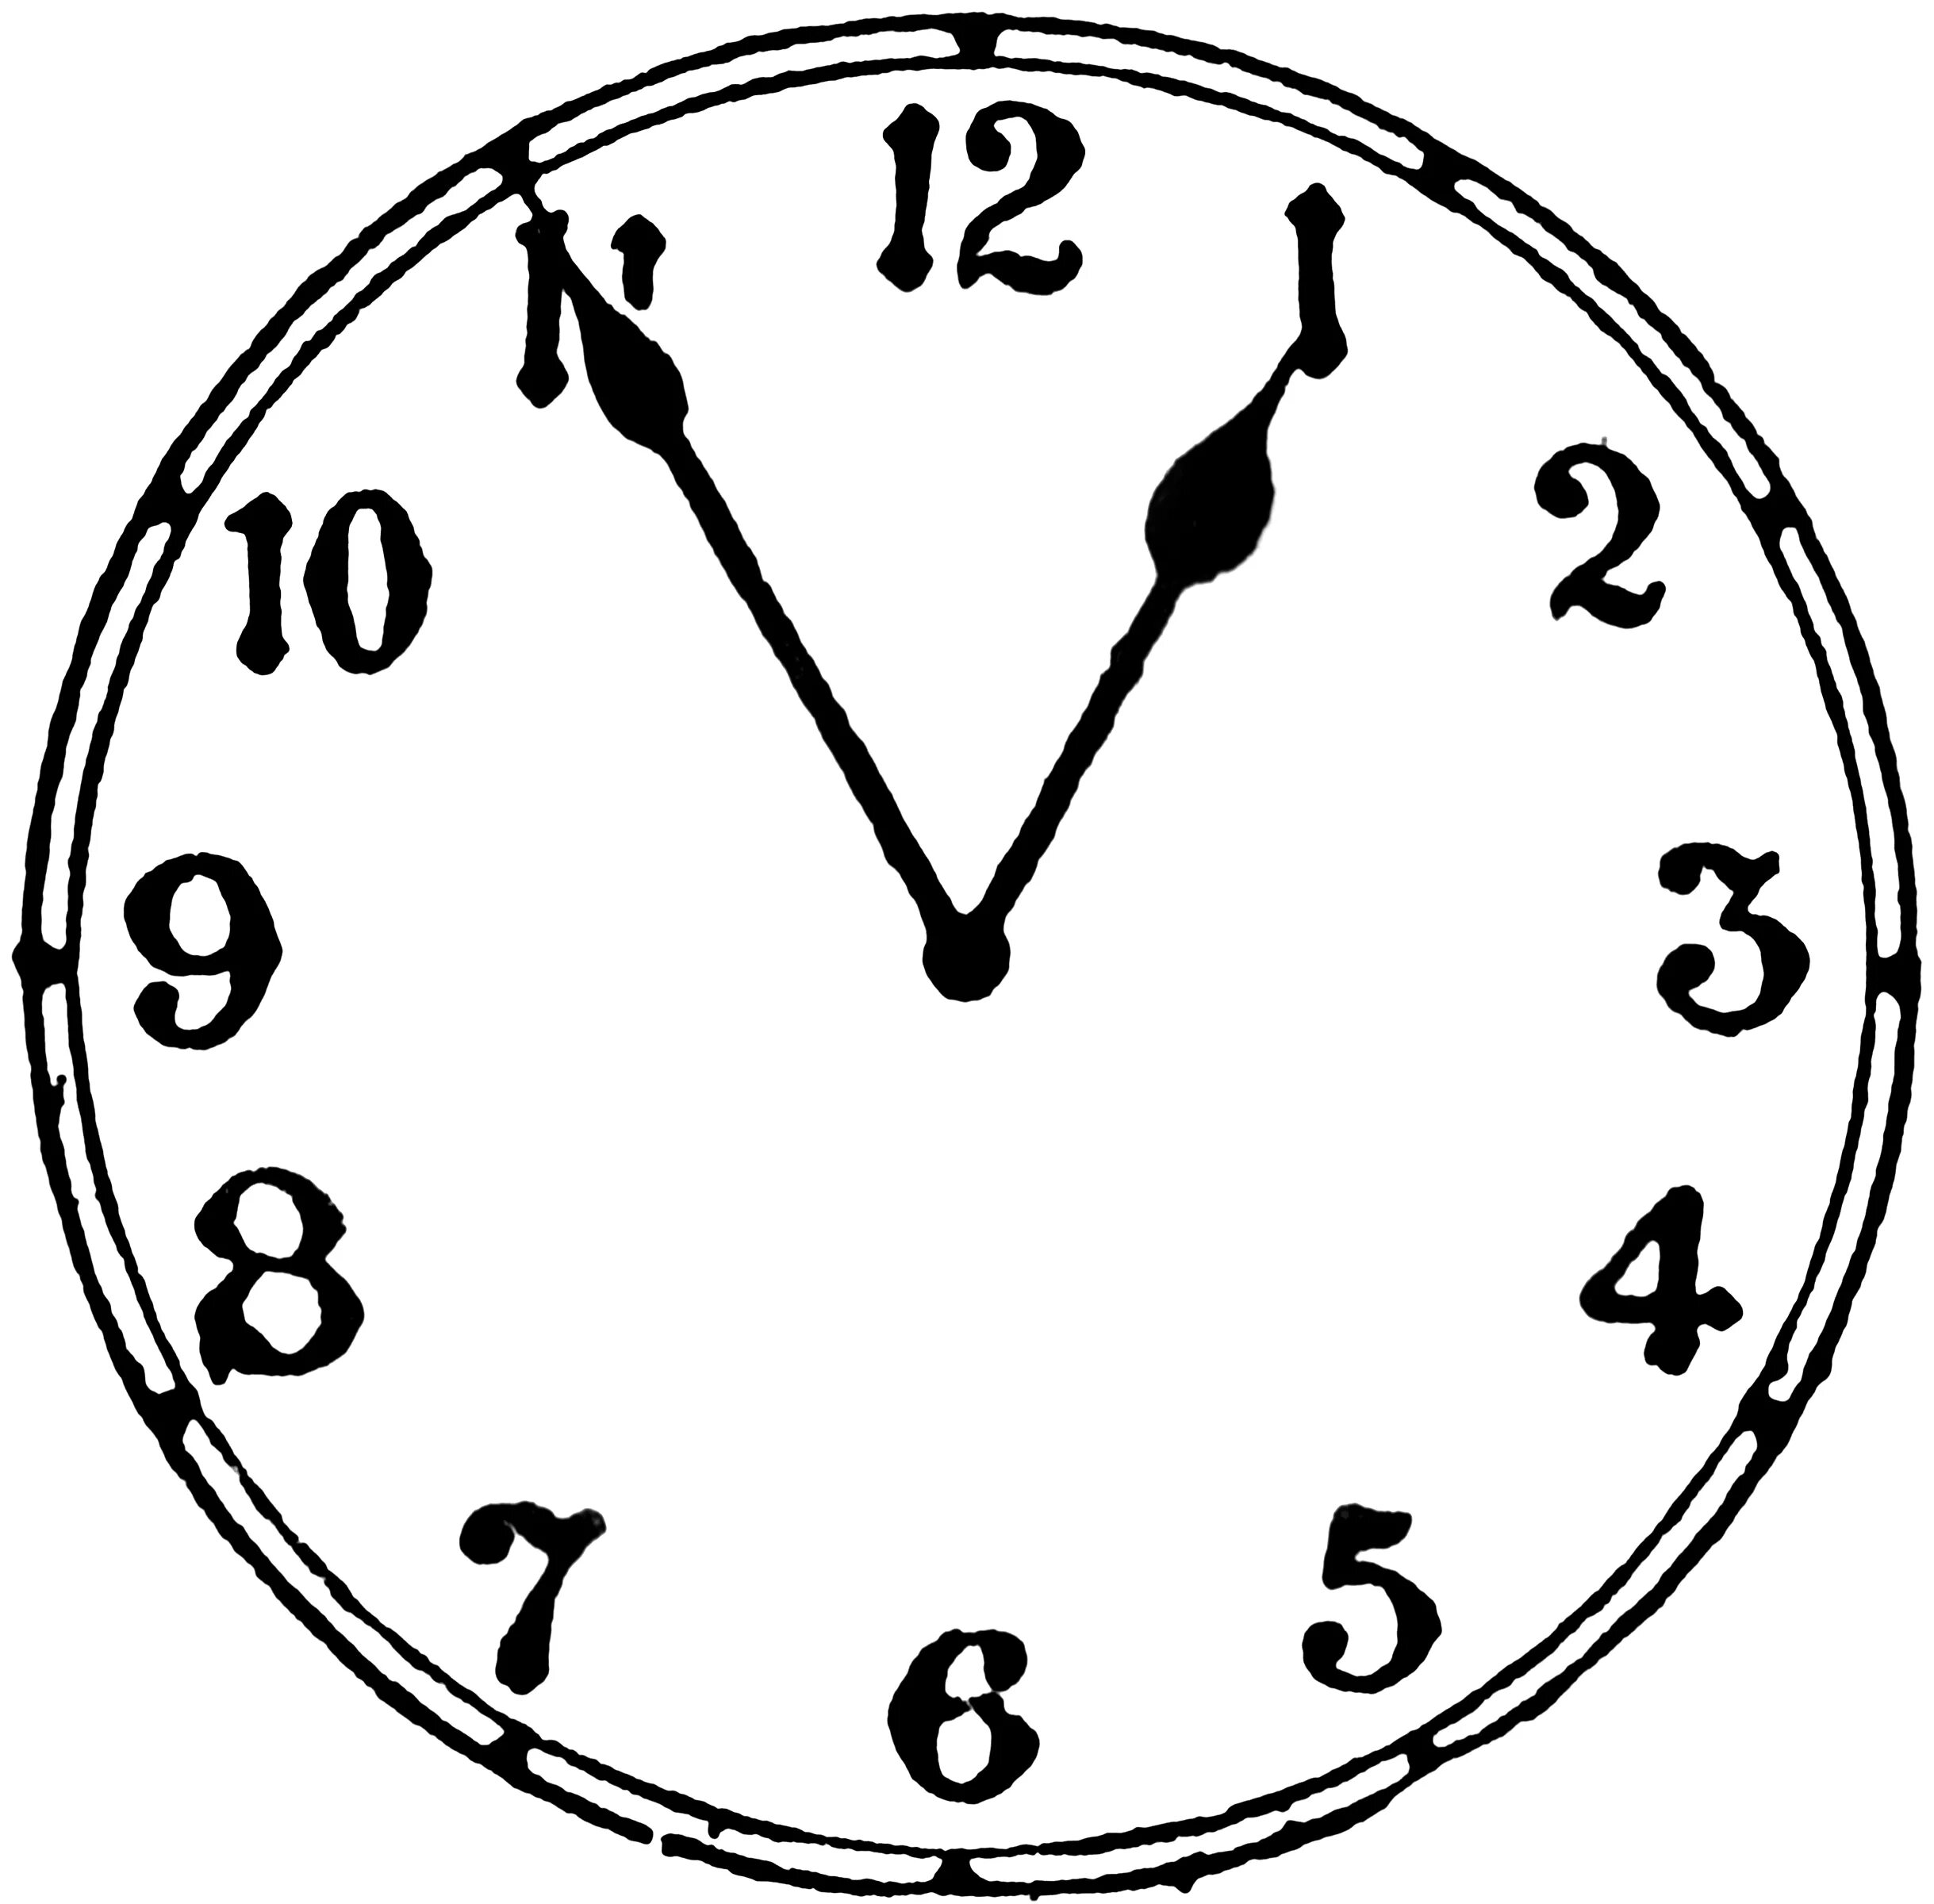 5 12 8 30. Часы без пяти 11. Часы 12:15. Часы которые показывают 5 часов. Часы 12:20.